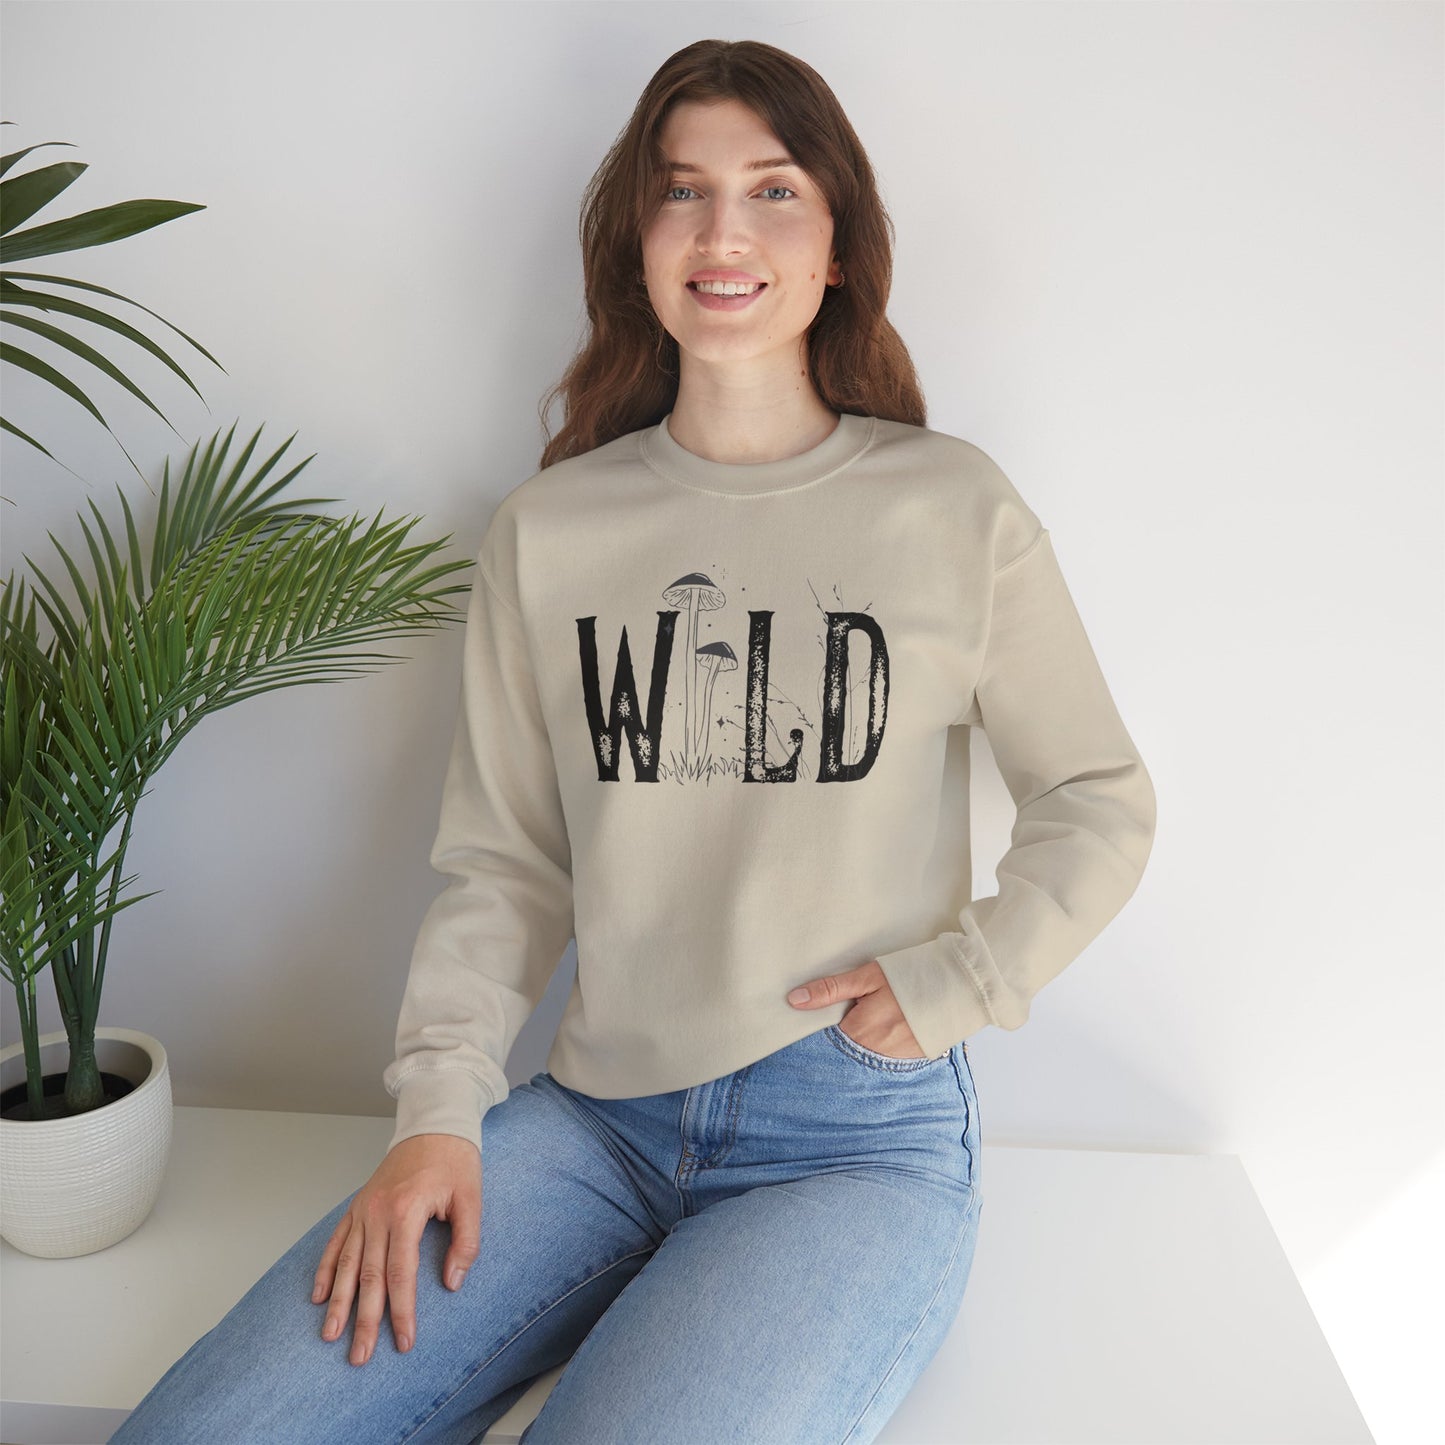 Wild Mushroom Crewneck Sweatshirt